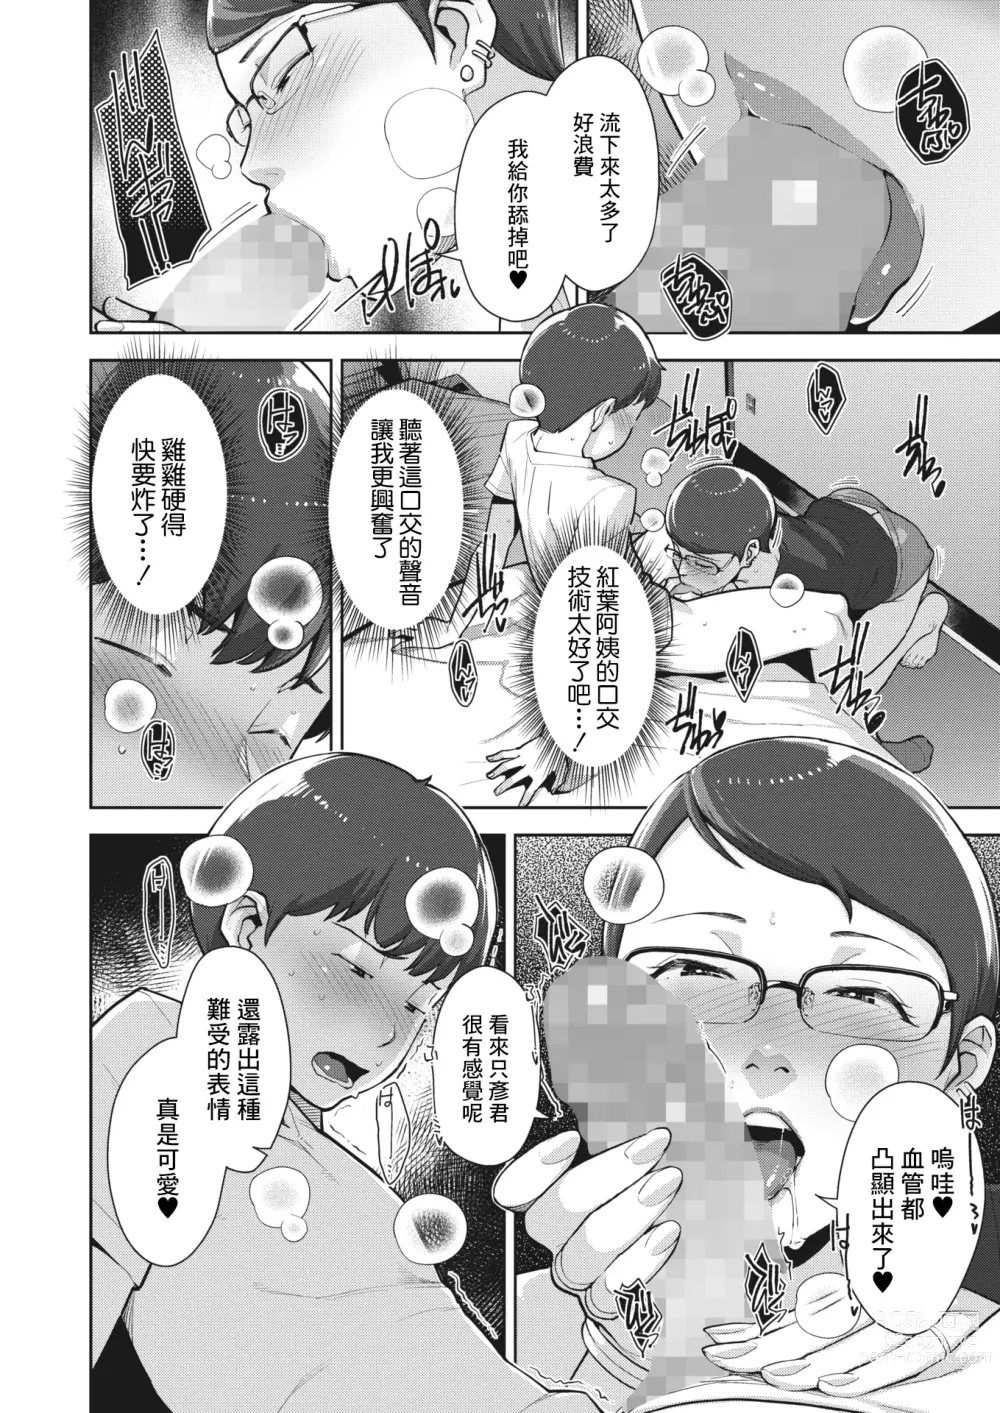 Page 12 of manga Irodori Kazoku Ch. 2